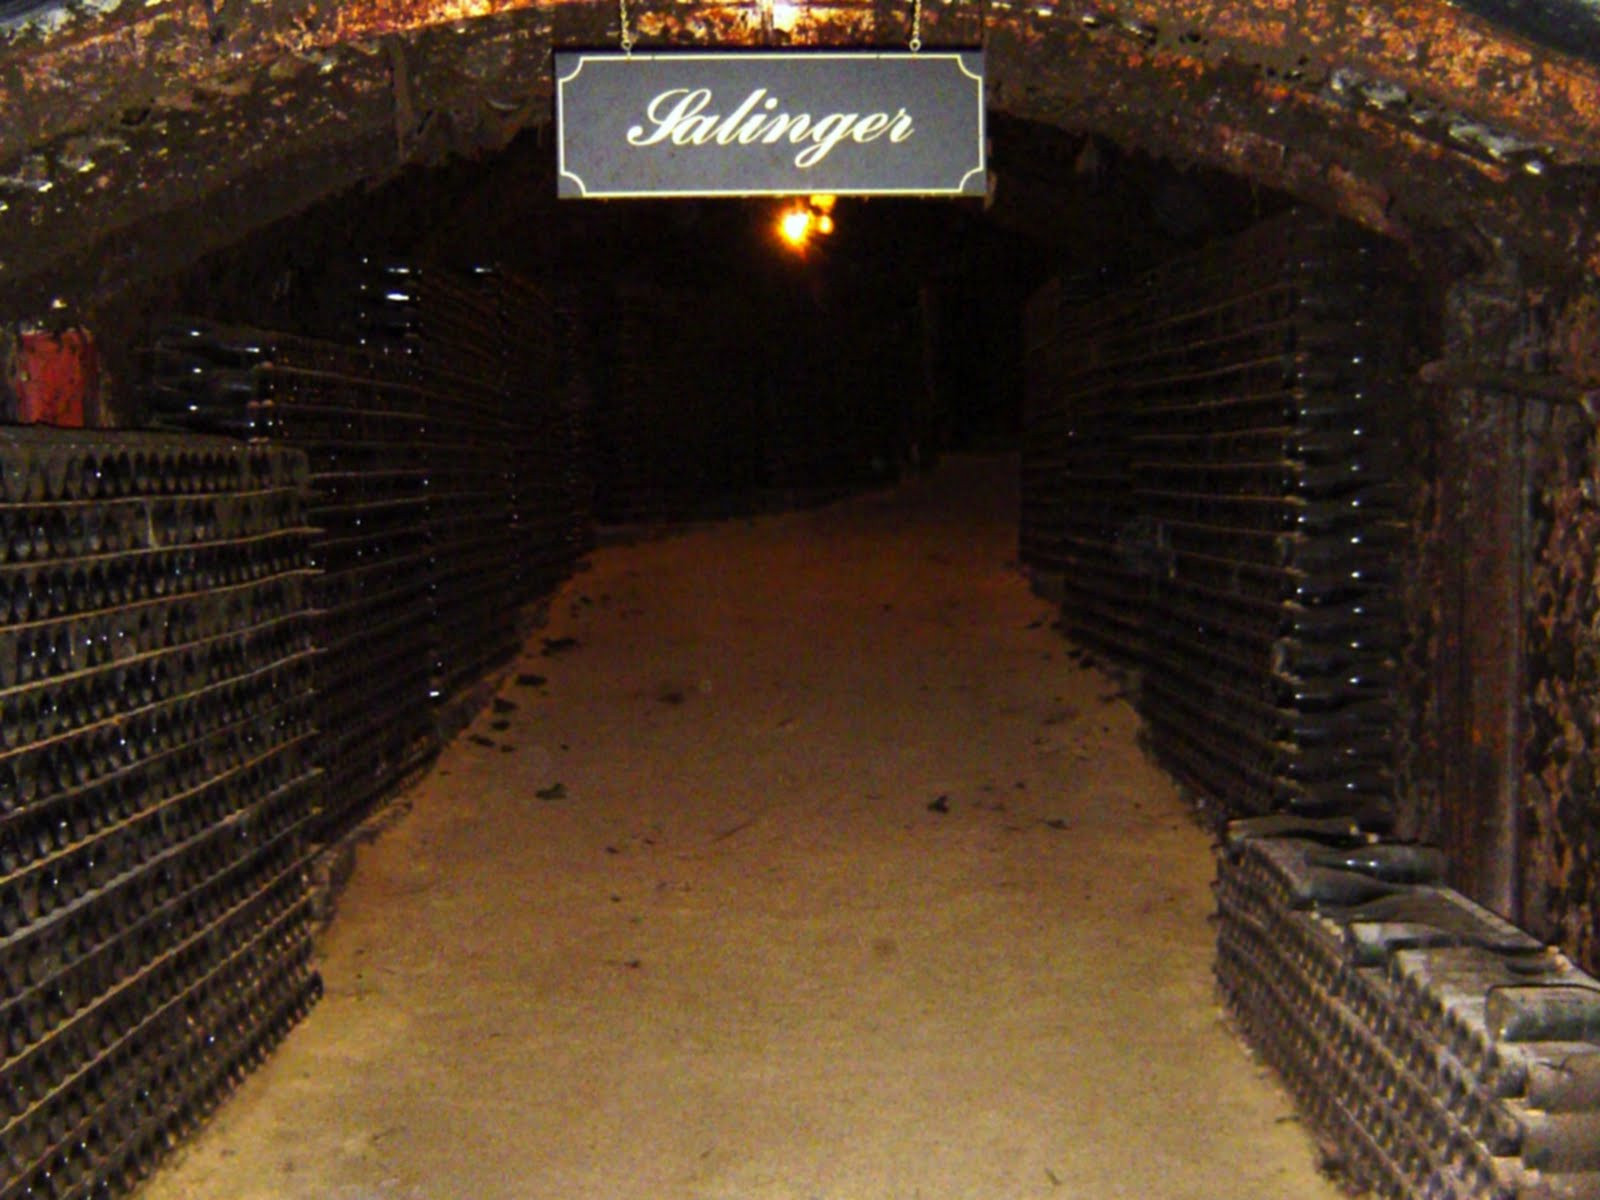 Best ideas about Underground Wine Cellar
. Save or Pin Australian Wine Journal SEPPELT S UNDERGROUND WINE CELLAR Now.